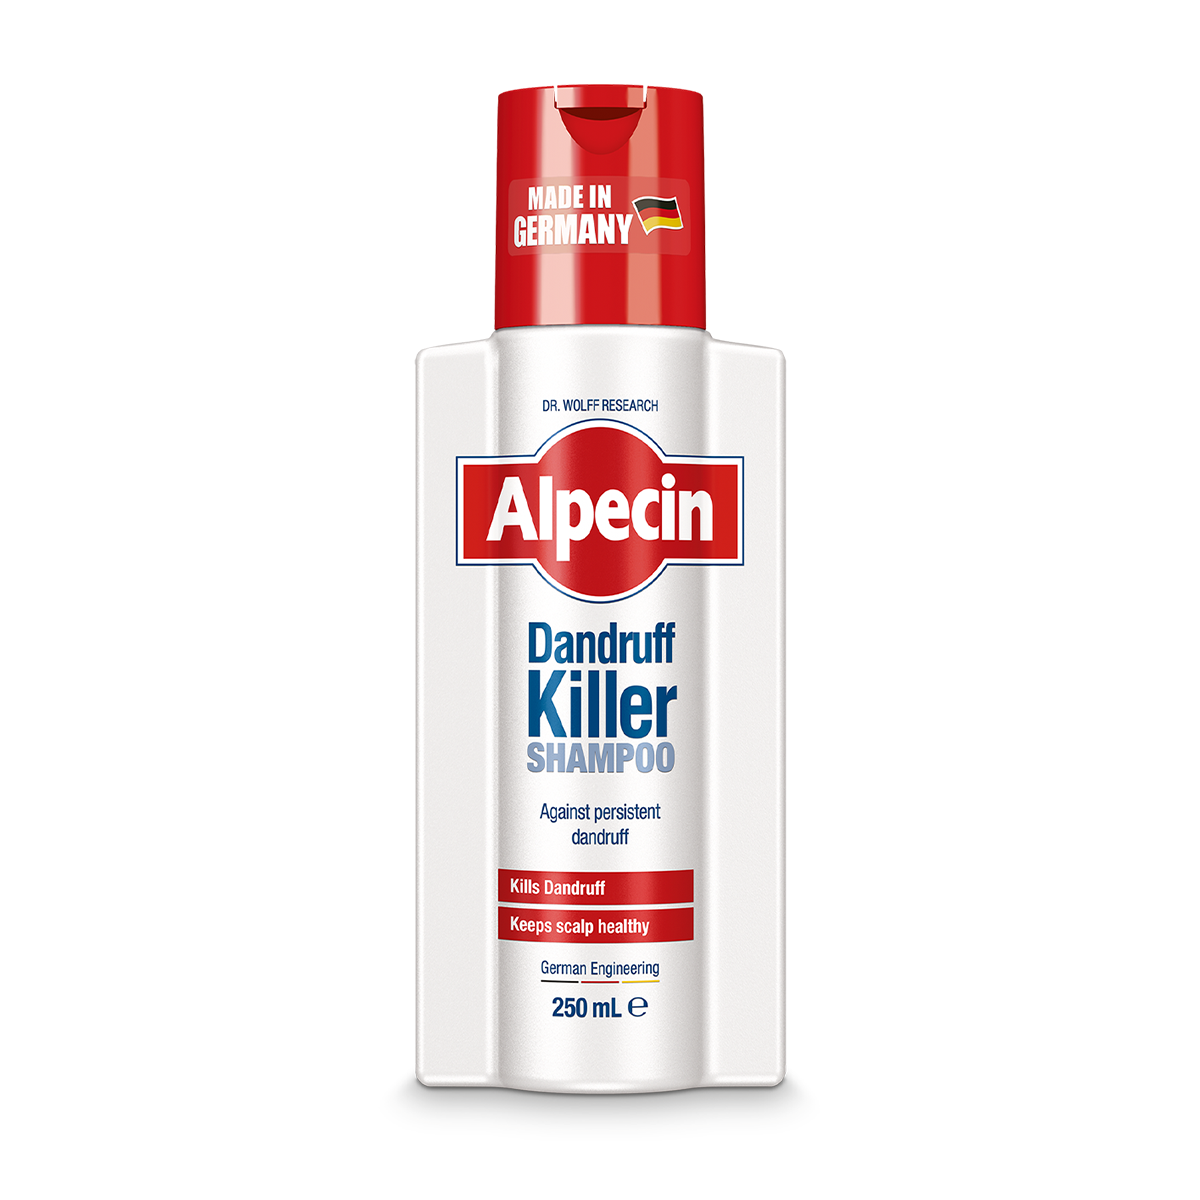 Alpecin Dandruff Killer Shampoo 250ML